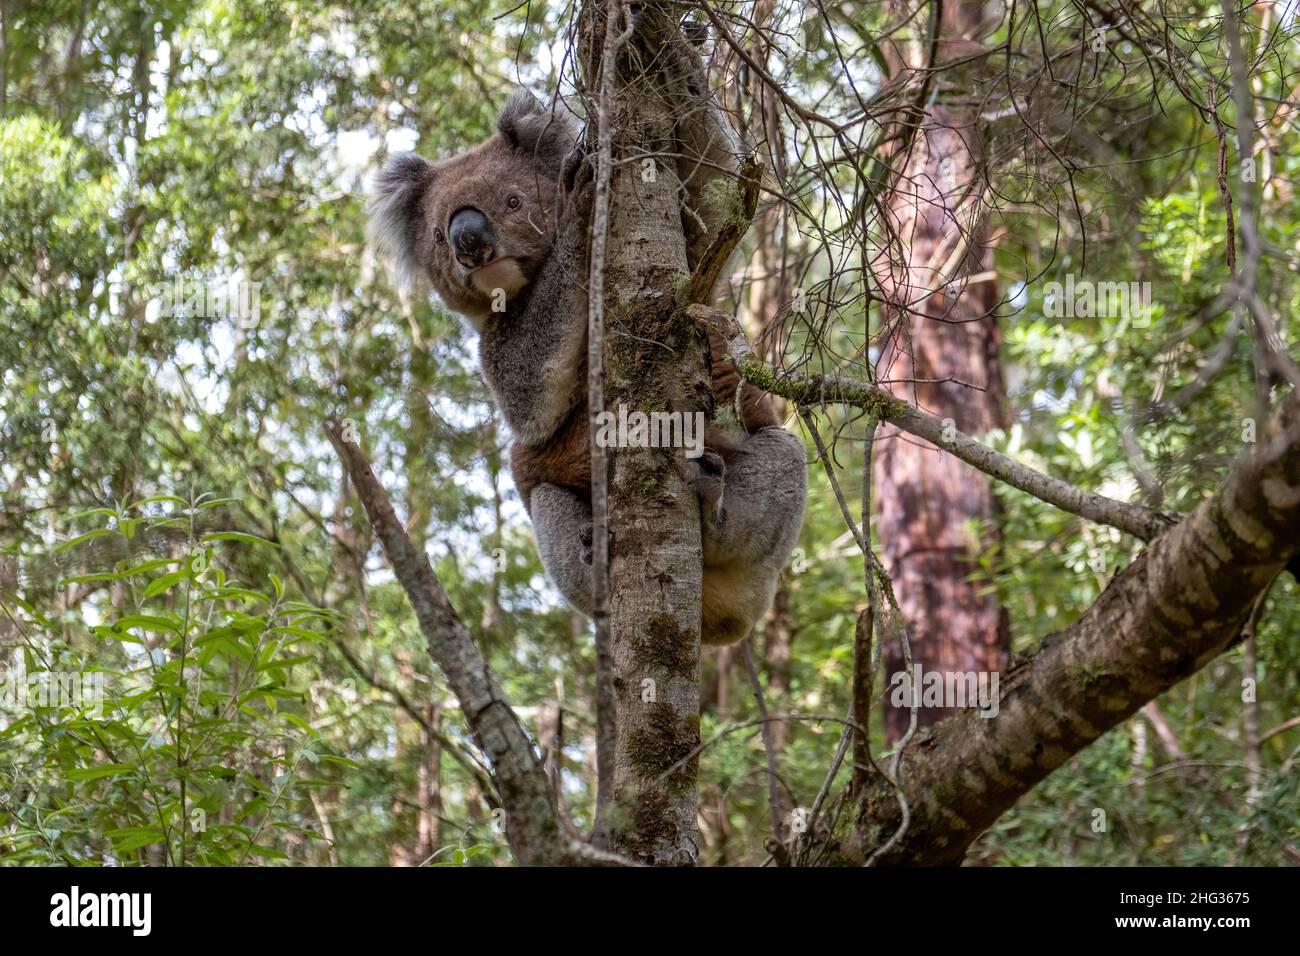 Lindo oso koala en el bosque nativo australiano Foto de stock